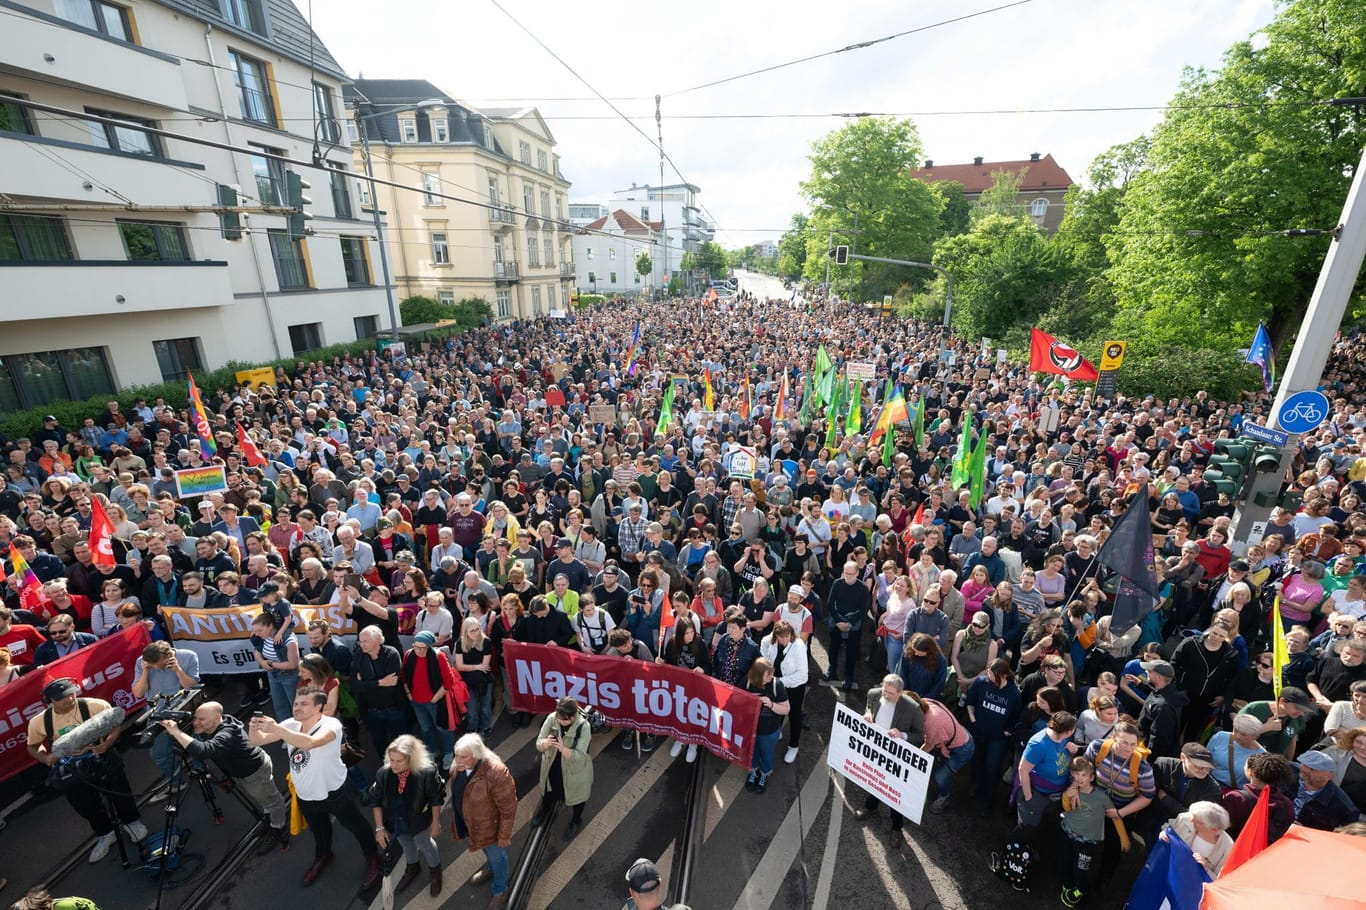 Teilnehmer einer Kundgebung anlässlich eines Angriffs auf einen SPD-Politiker stehen auf dem Pohlandplatz. Nach dem brutalen Angriff auf den SPD-Politiker Ecke hat sich ein 17-Jähriger der Polizei gestellt.